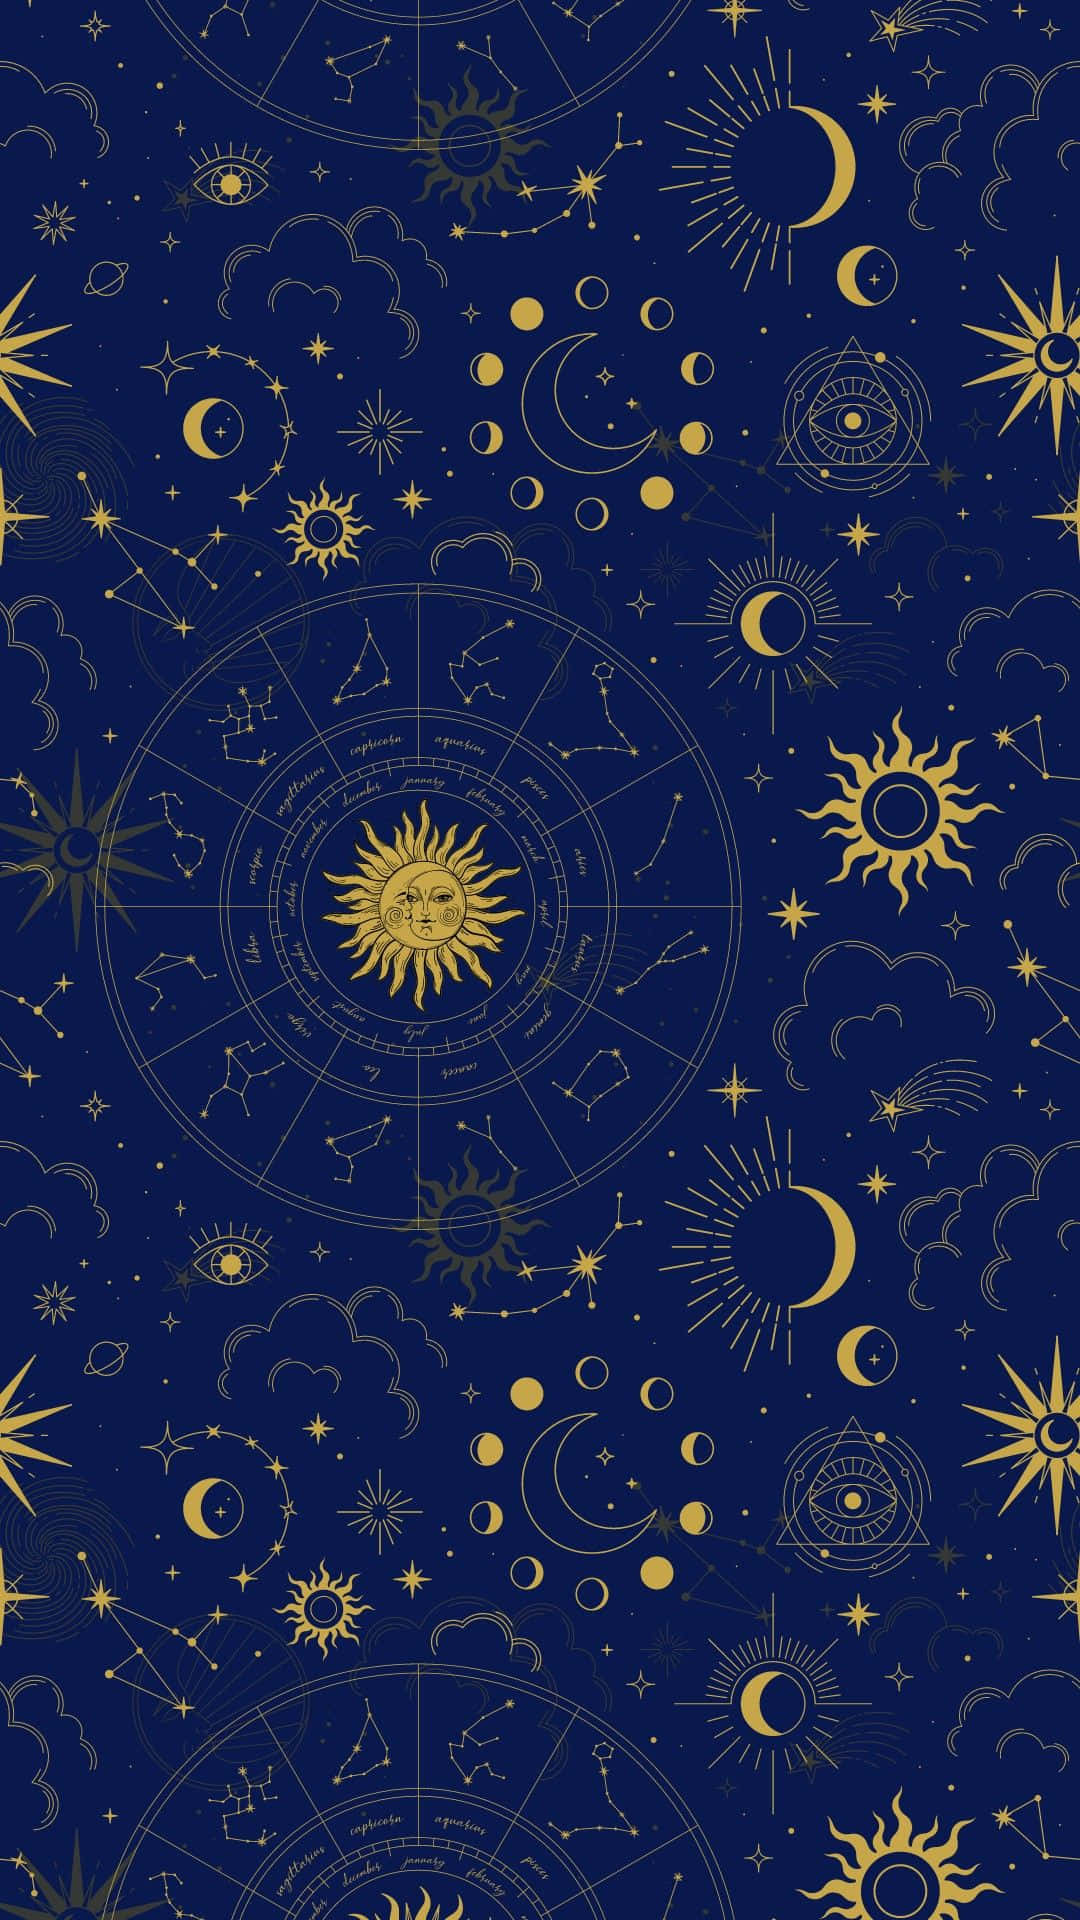 Mystical Astrology Tarot Pattern Wallpaper